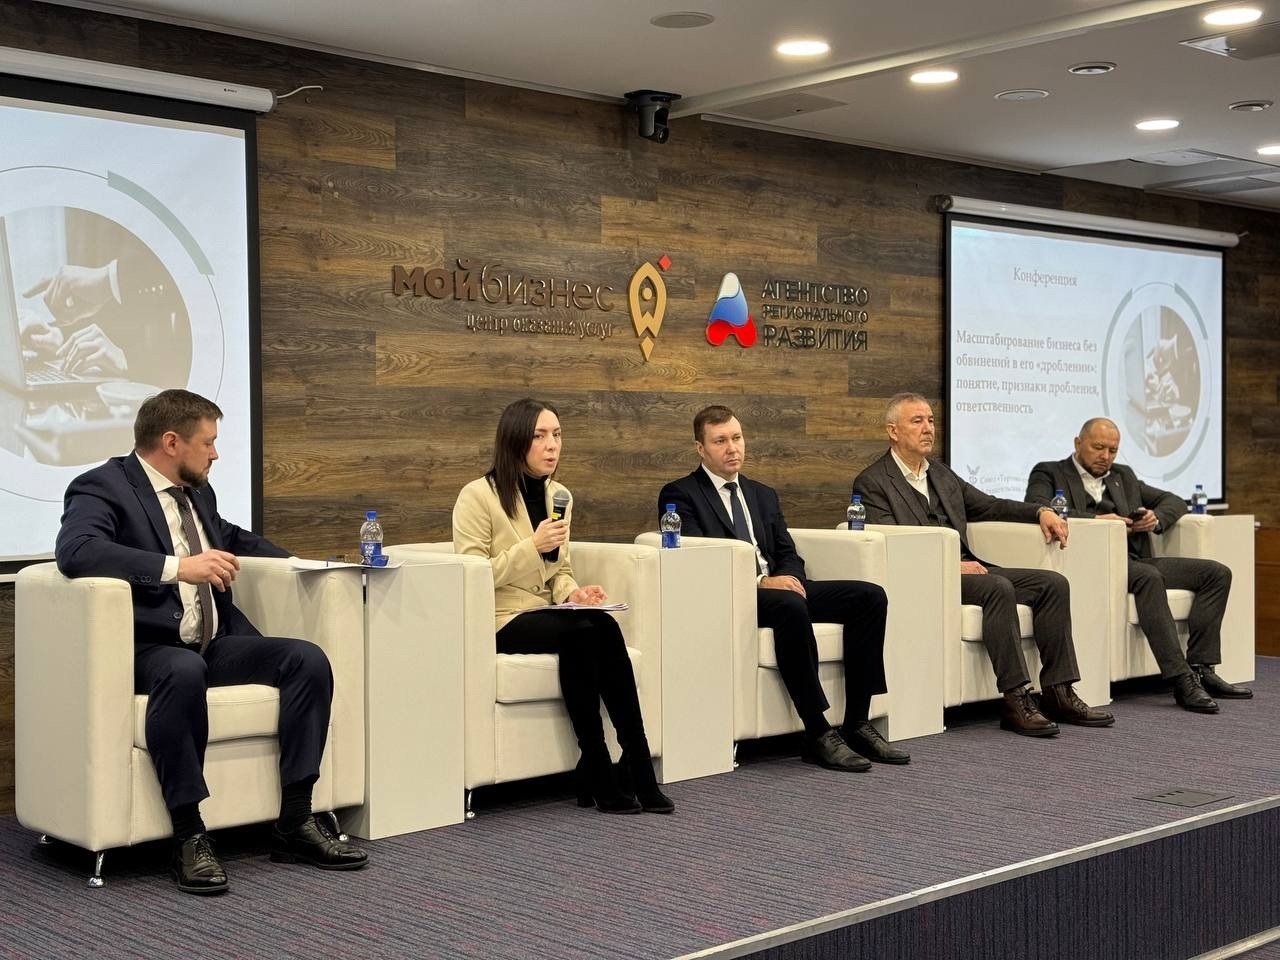 Риски дробления бизнеса обсудили участники конференции в Архангельске